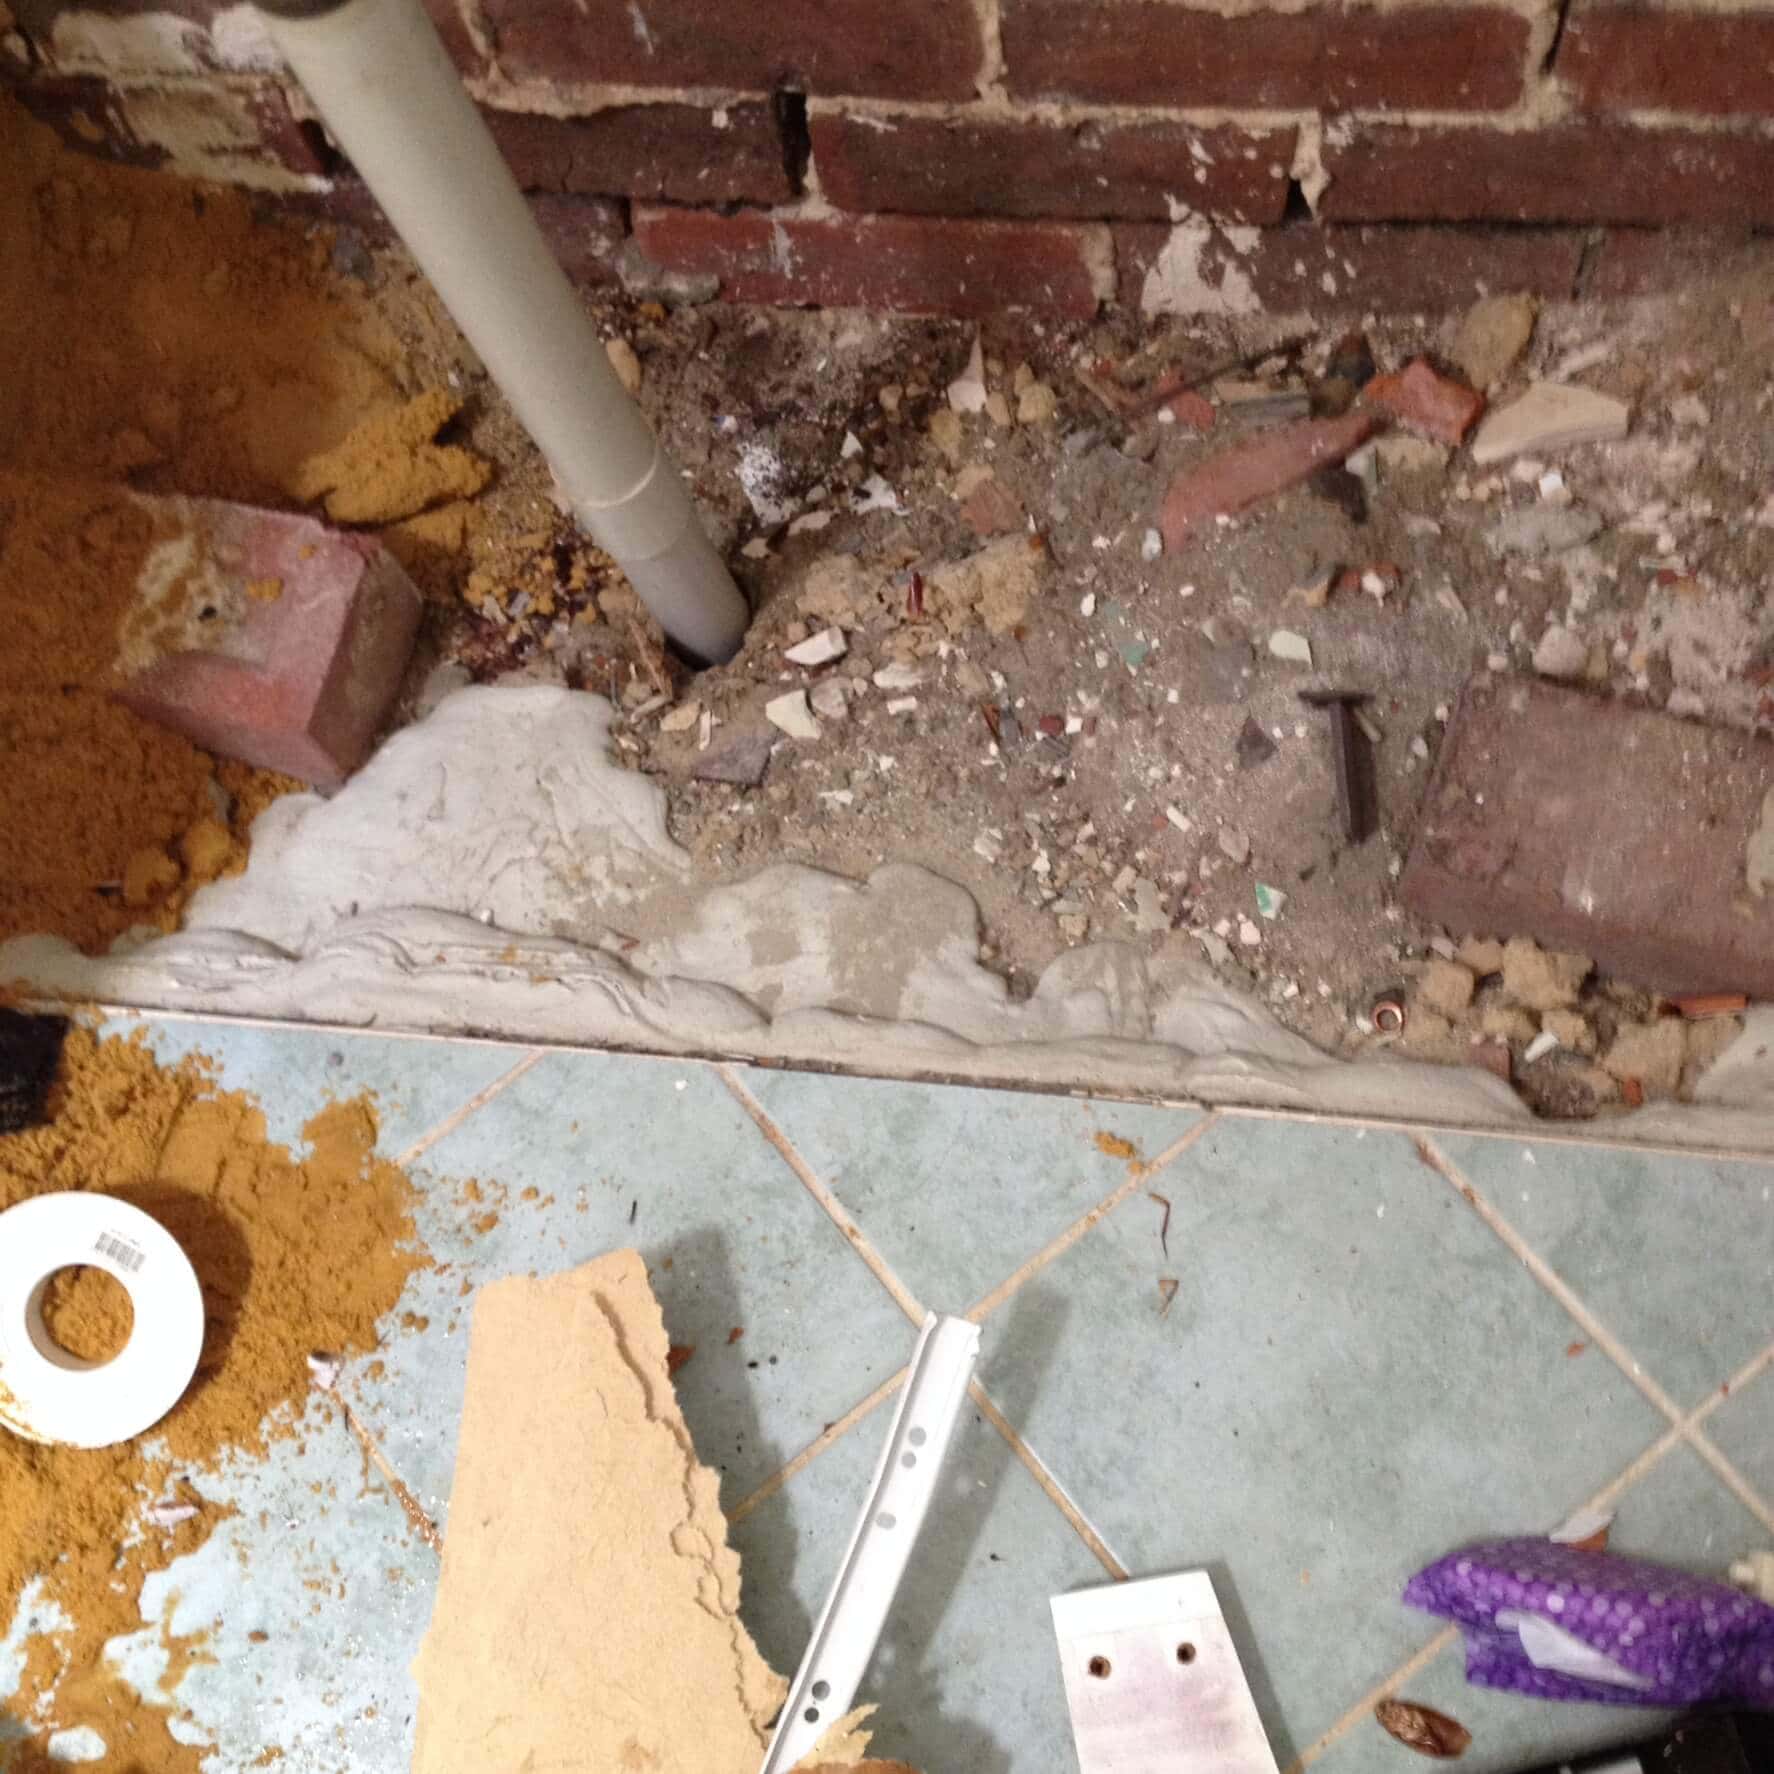 Everyday Plumbers Residential Vanity Basin Repairs - Basin Repair in Progress 0393